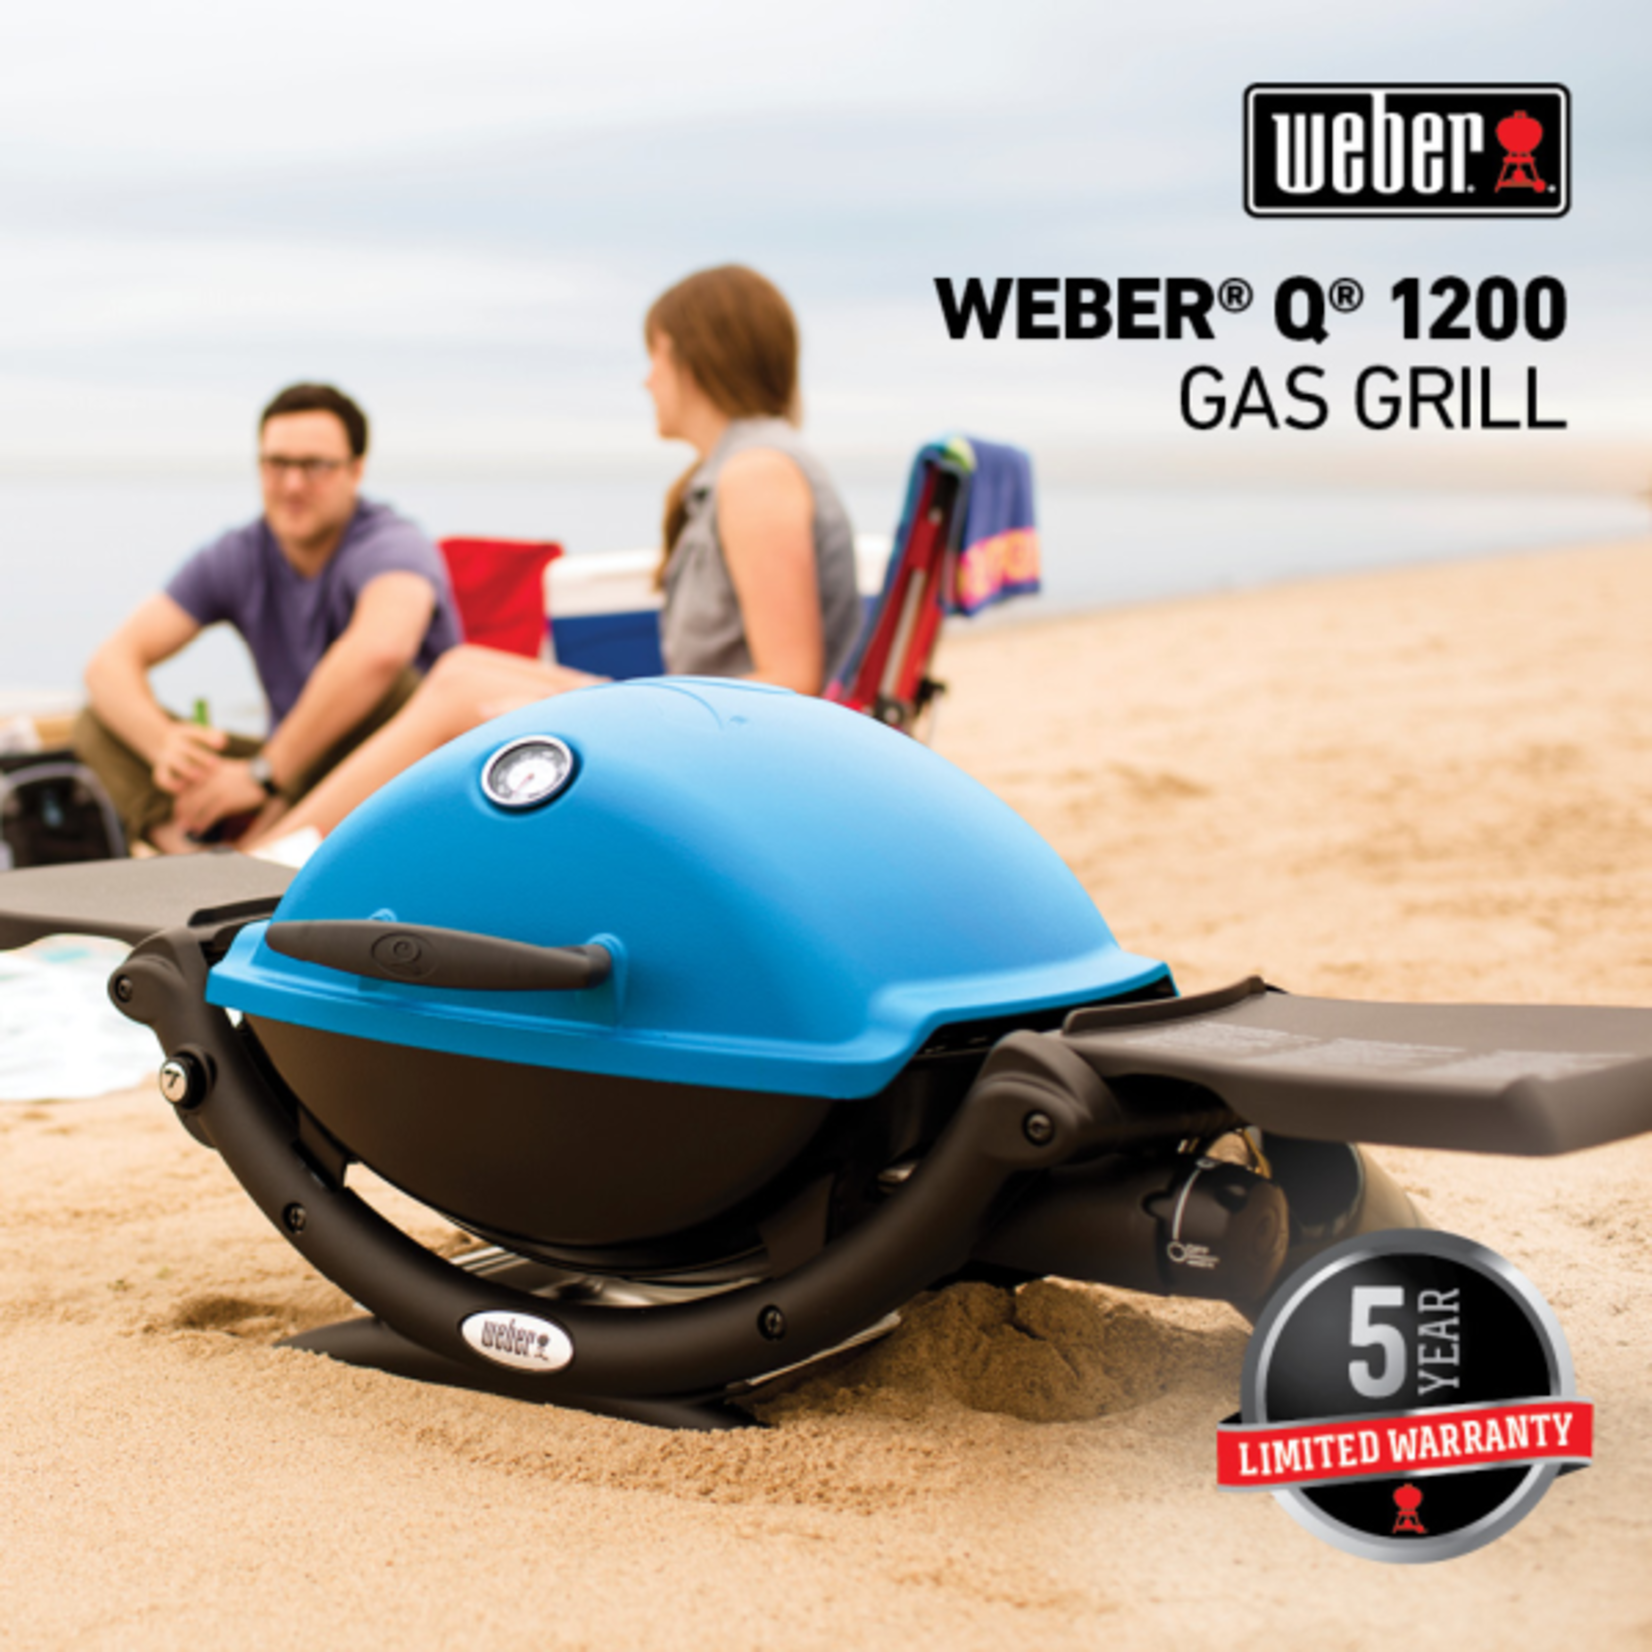 Weber Q 1200 Gas Grill LP Green